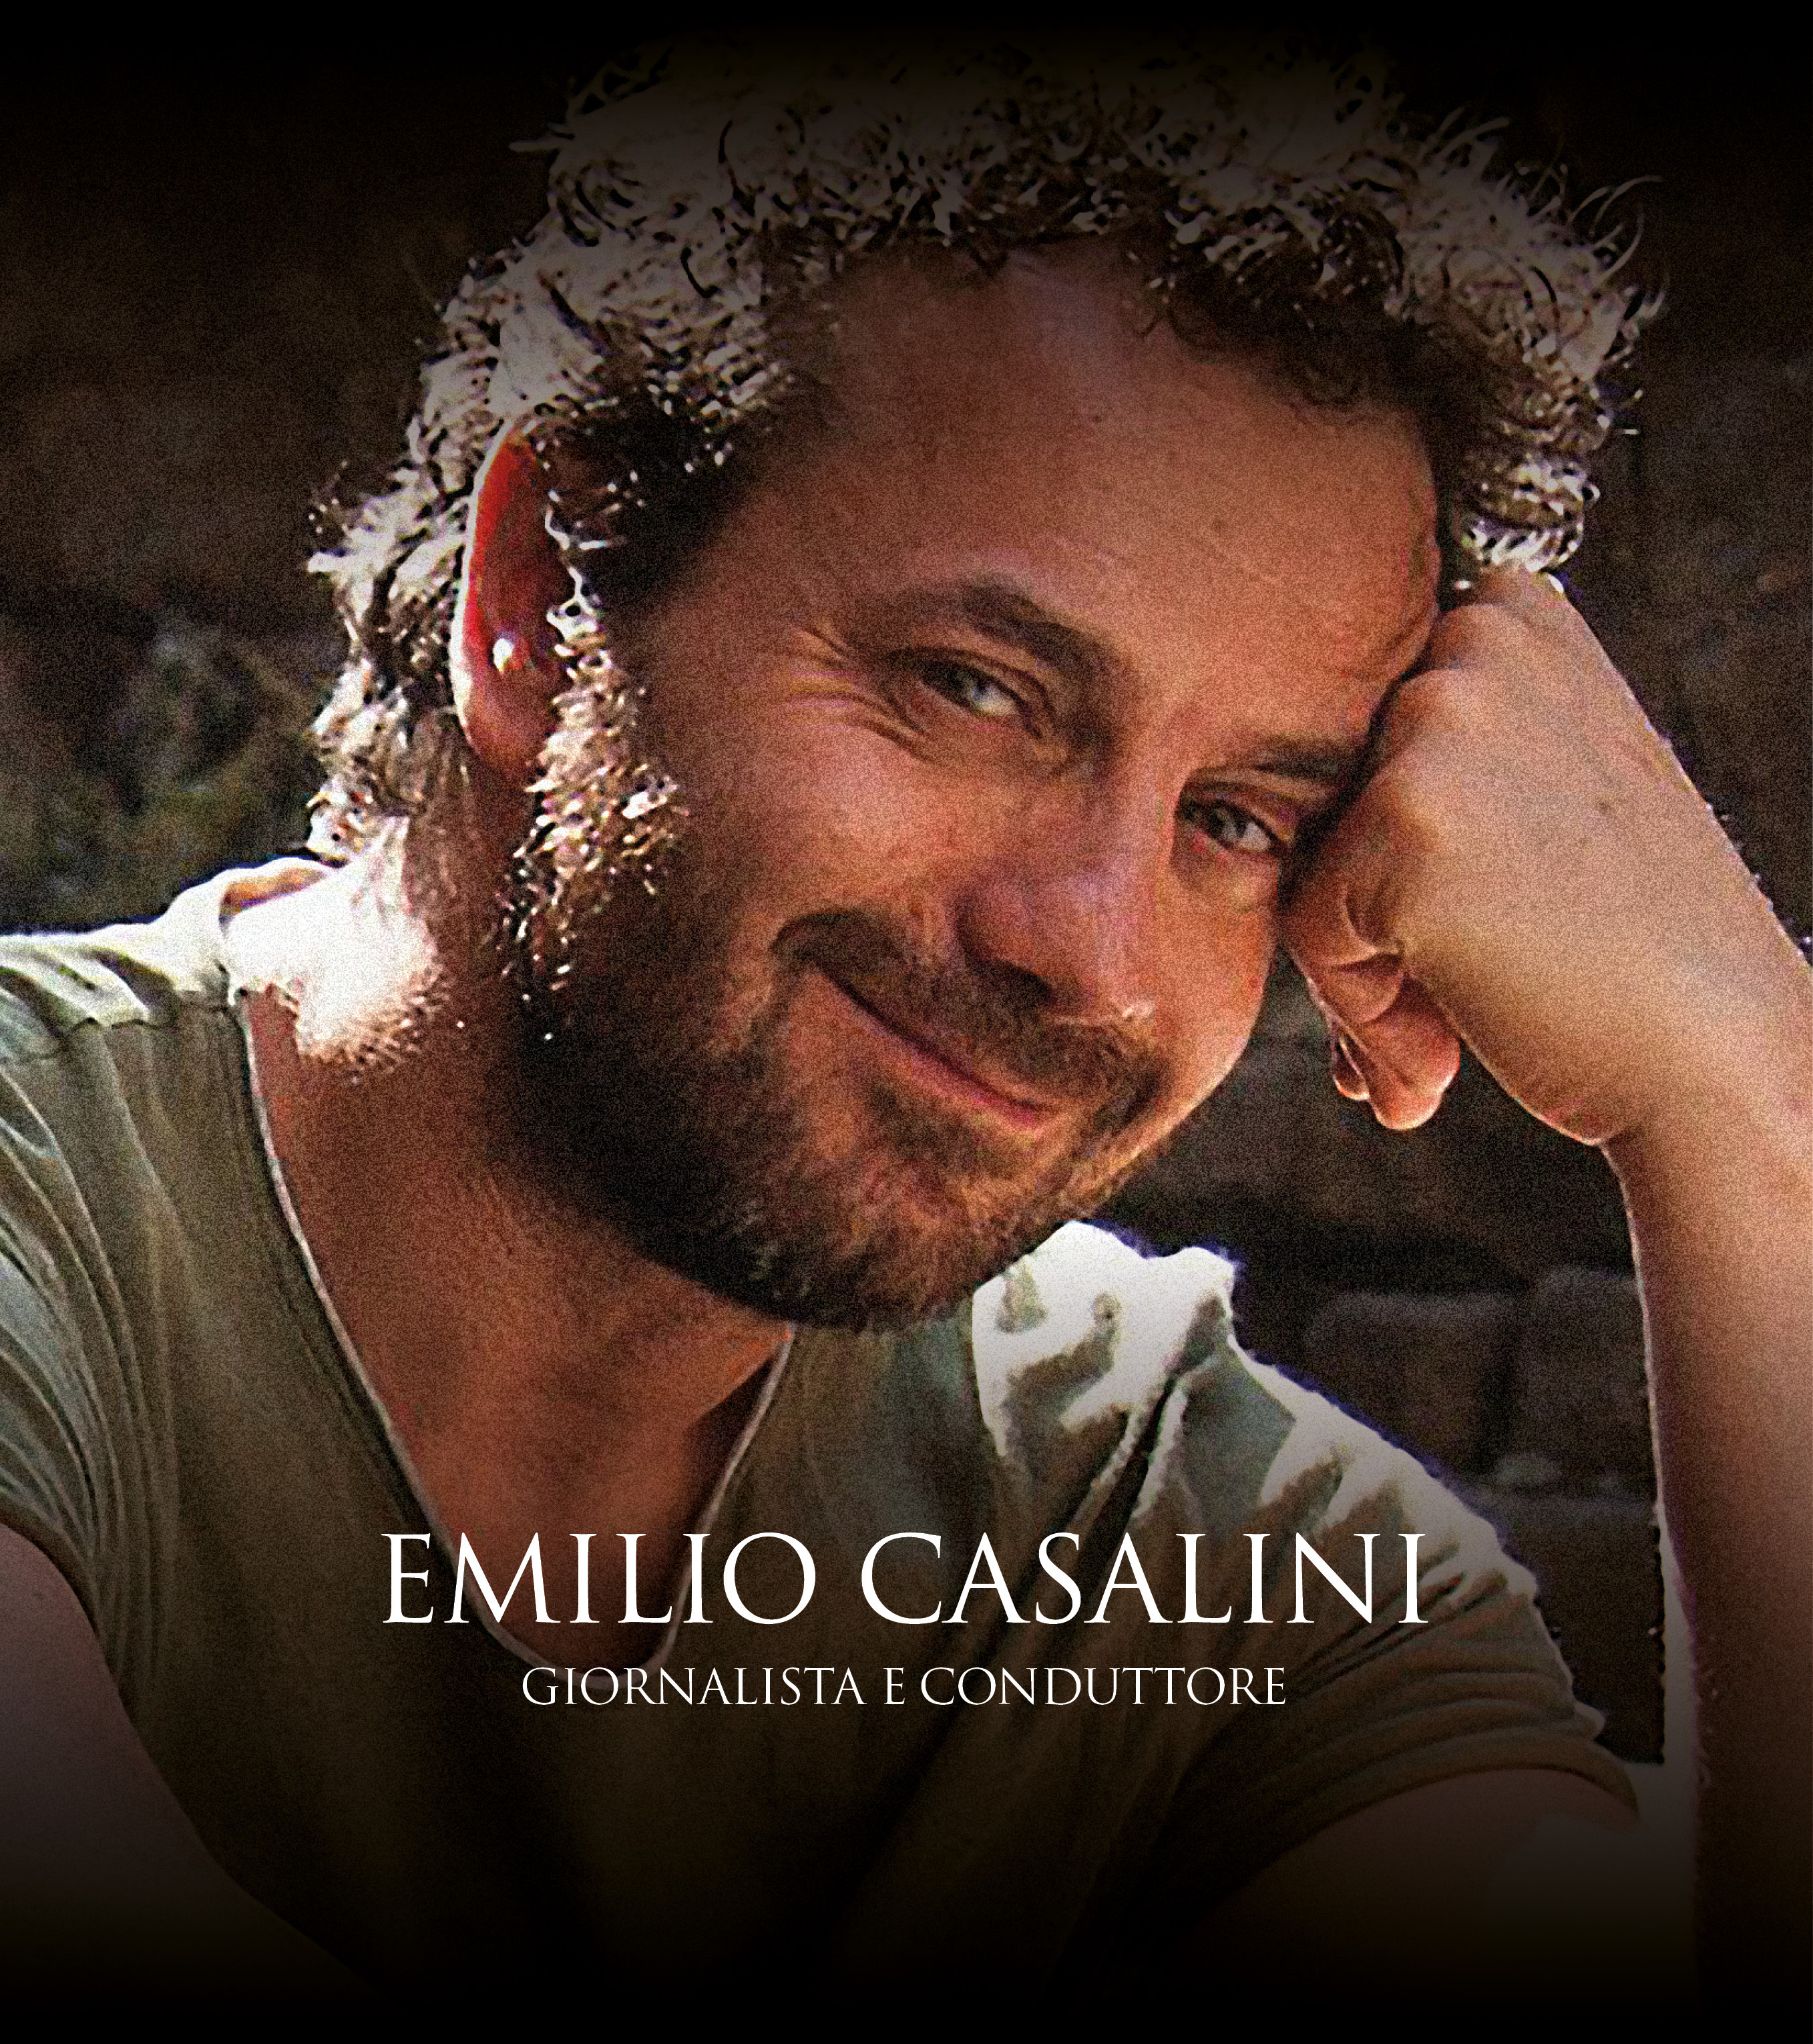 Emilio Casalini